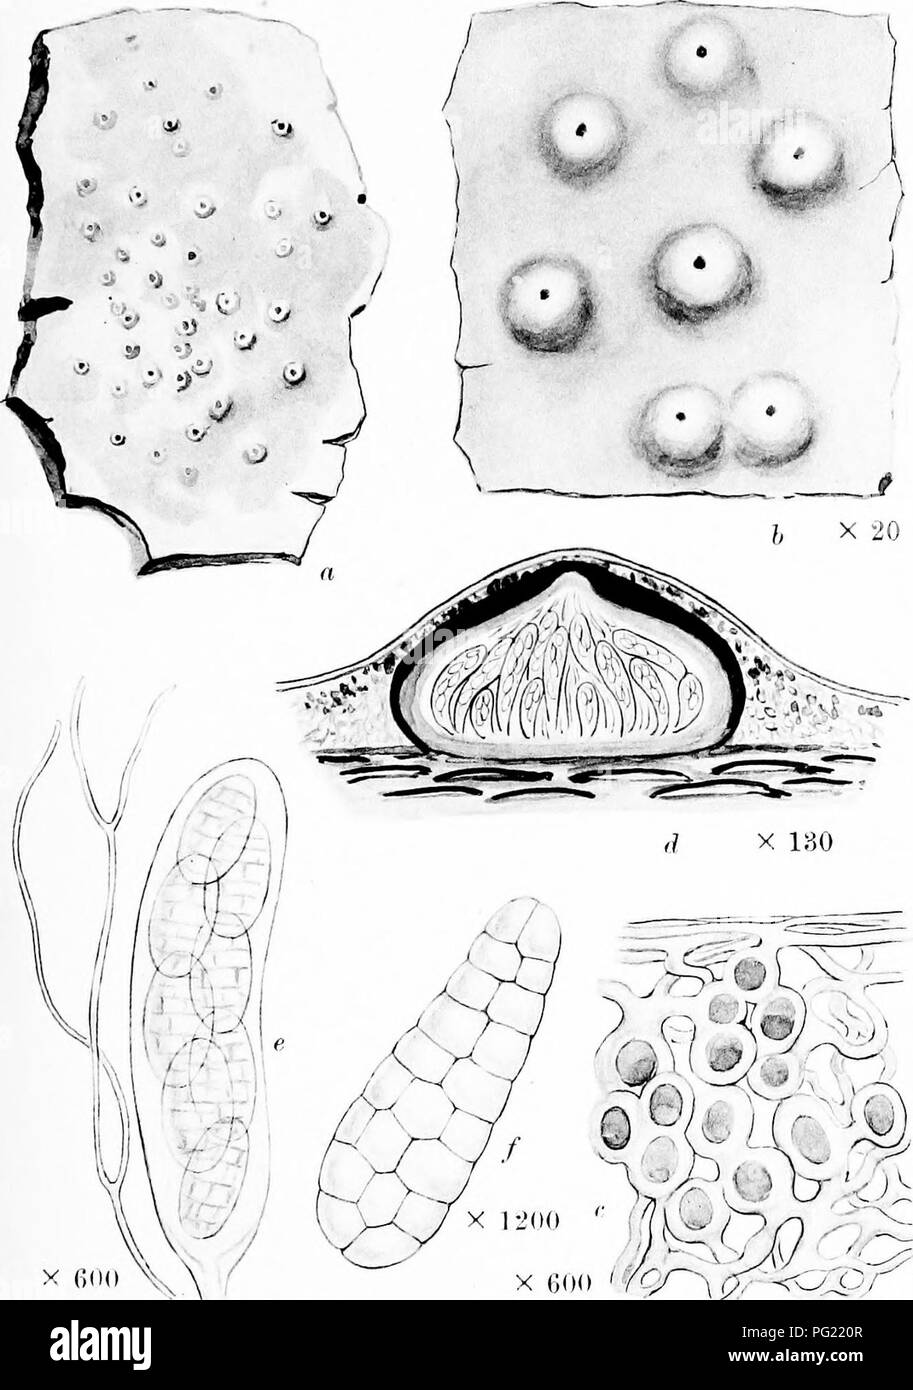 . Una monografia di licheni trovato in Gran Bretagna; essendo un catalogo descrittivo della specie nell'erbario del British Museum. I licheni. La piastra 46. X fidO , MICROGLAENA MODESTA A. L. SNI. una pianta intera, b. Porzione di thallns siiul perithecia. c. Pectioii verticale di tallo. d. Sezione verticale di perithecium. e. Aschi paraphysis e. /. Spora.. Si prega di notare che queste immagini vengono estratte dalla pagina sottoposta a scansione di immagini che possono essere state migliorate digitalmente per la leggibilità - Colorazione e aspetto di queste illustrazioni potrebbero non perfettamente assomigliano al lavoro originale. British Museum (storia naturale Foto Stock